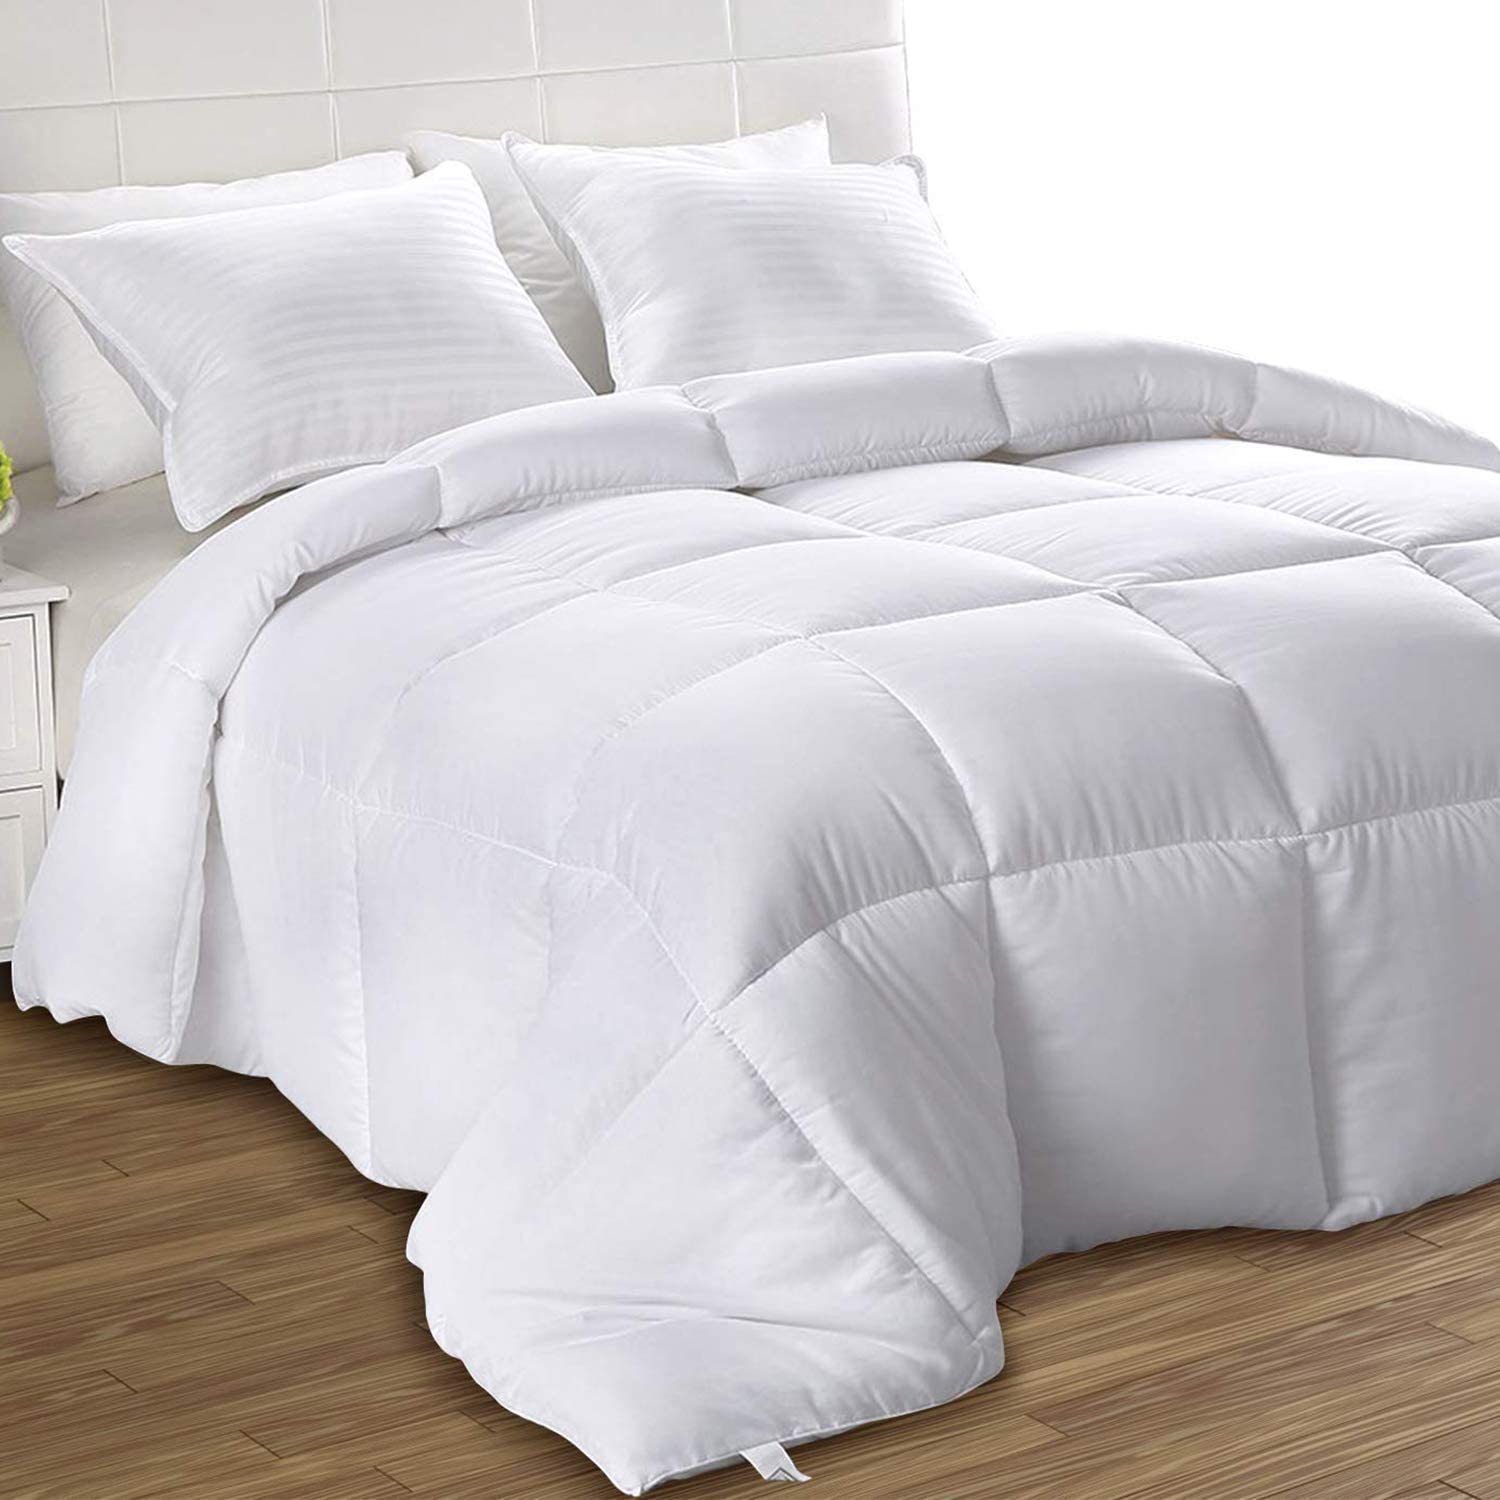 Utopia Bedding Siliconized All-Season Fiberfill Queen Comforter